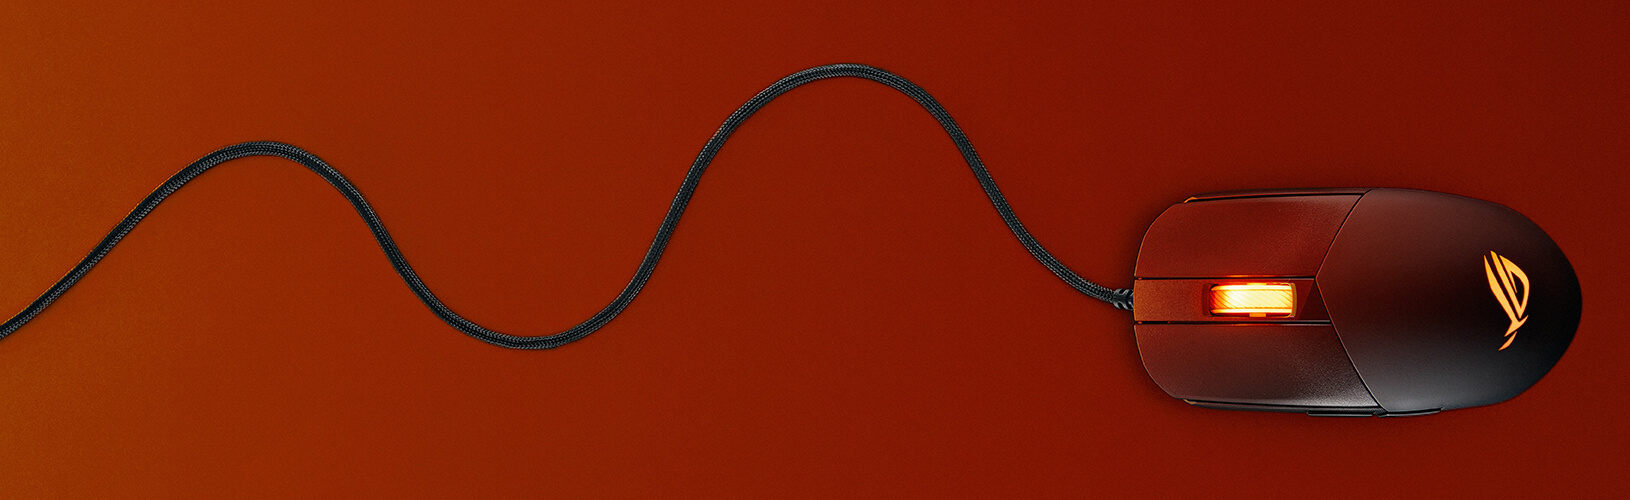 Зображення, на якому показано гнучкий обплетений кабель ROG Strix Impact III